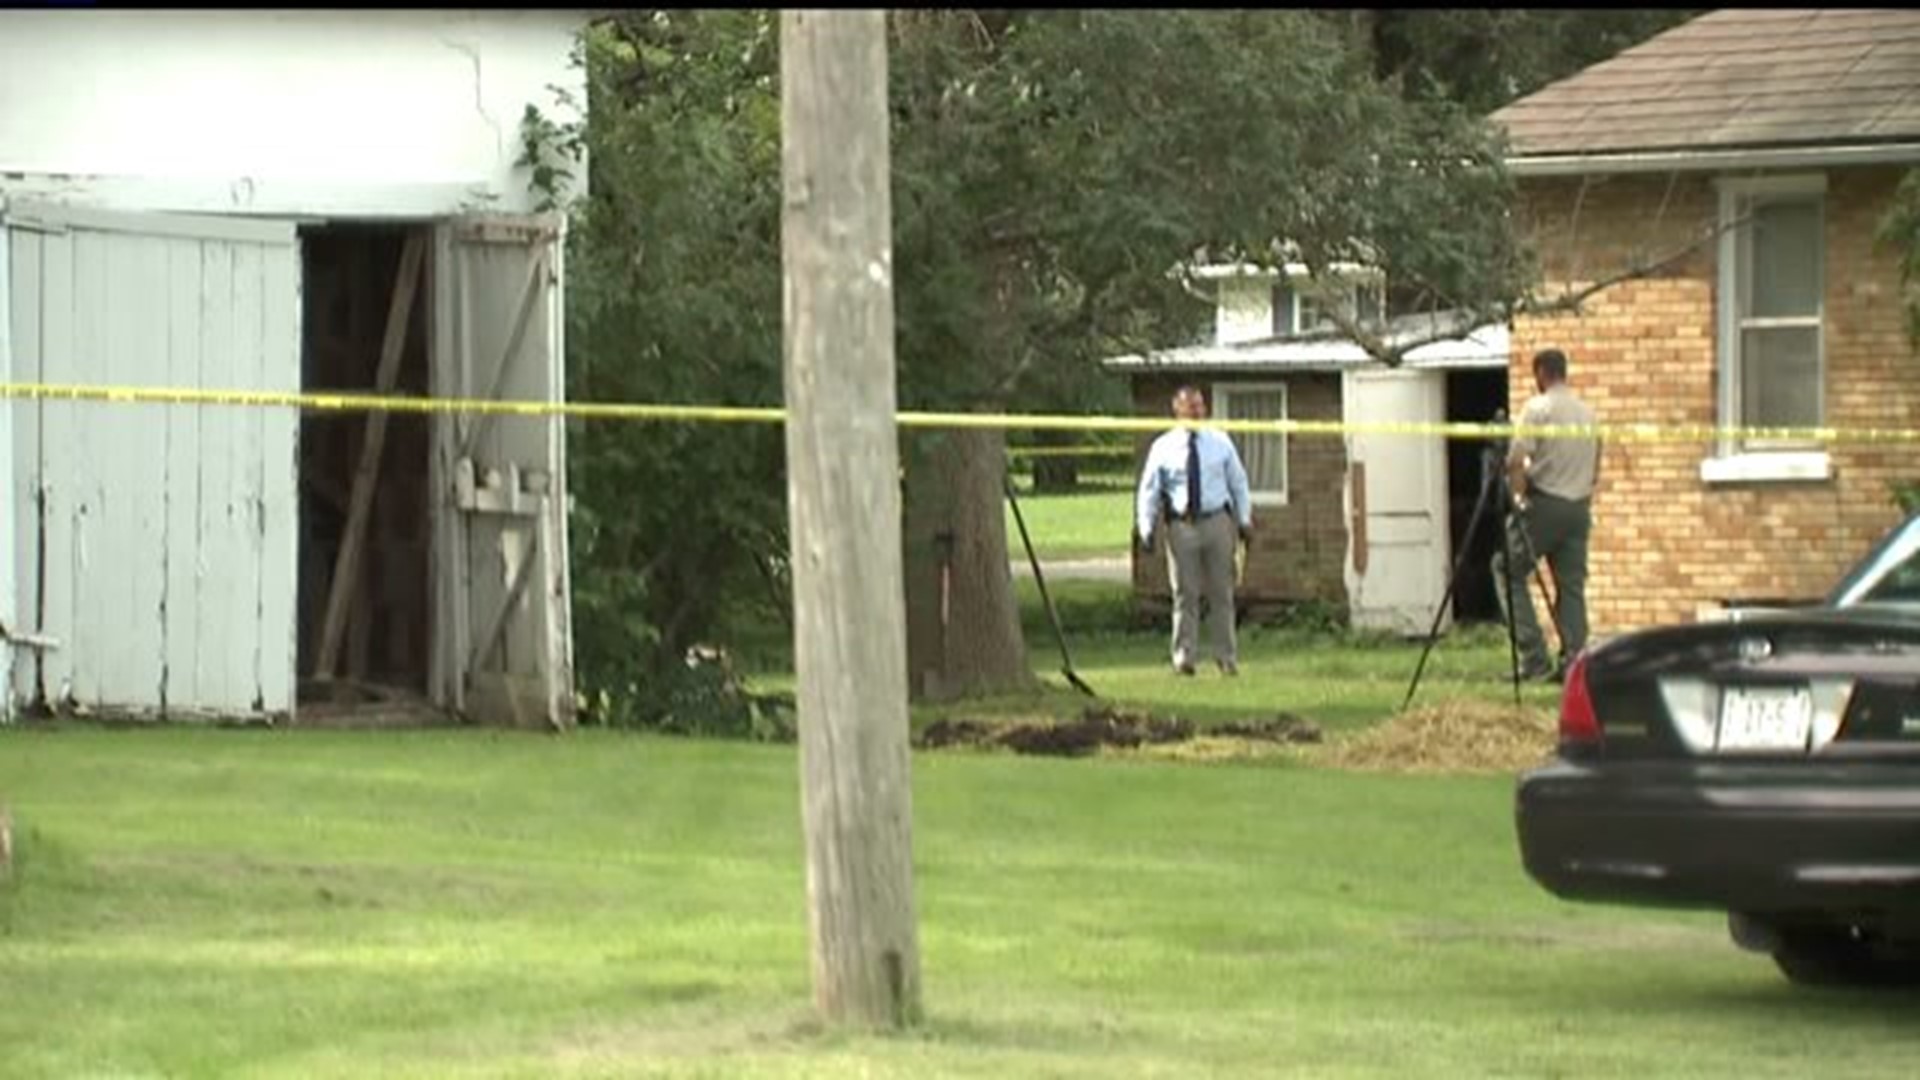 Possible crime scene found in Deborah Dewey murder investigation